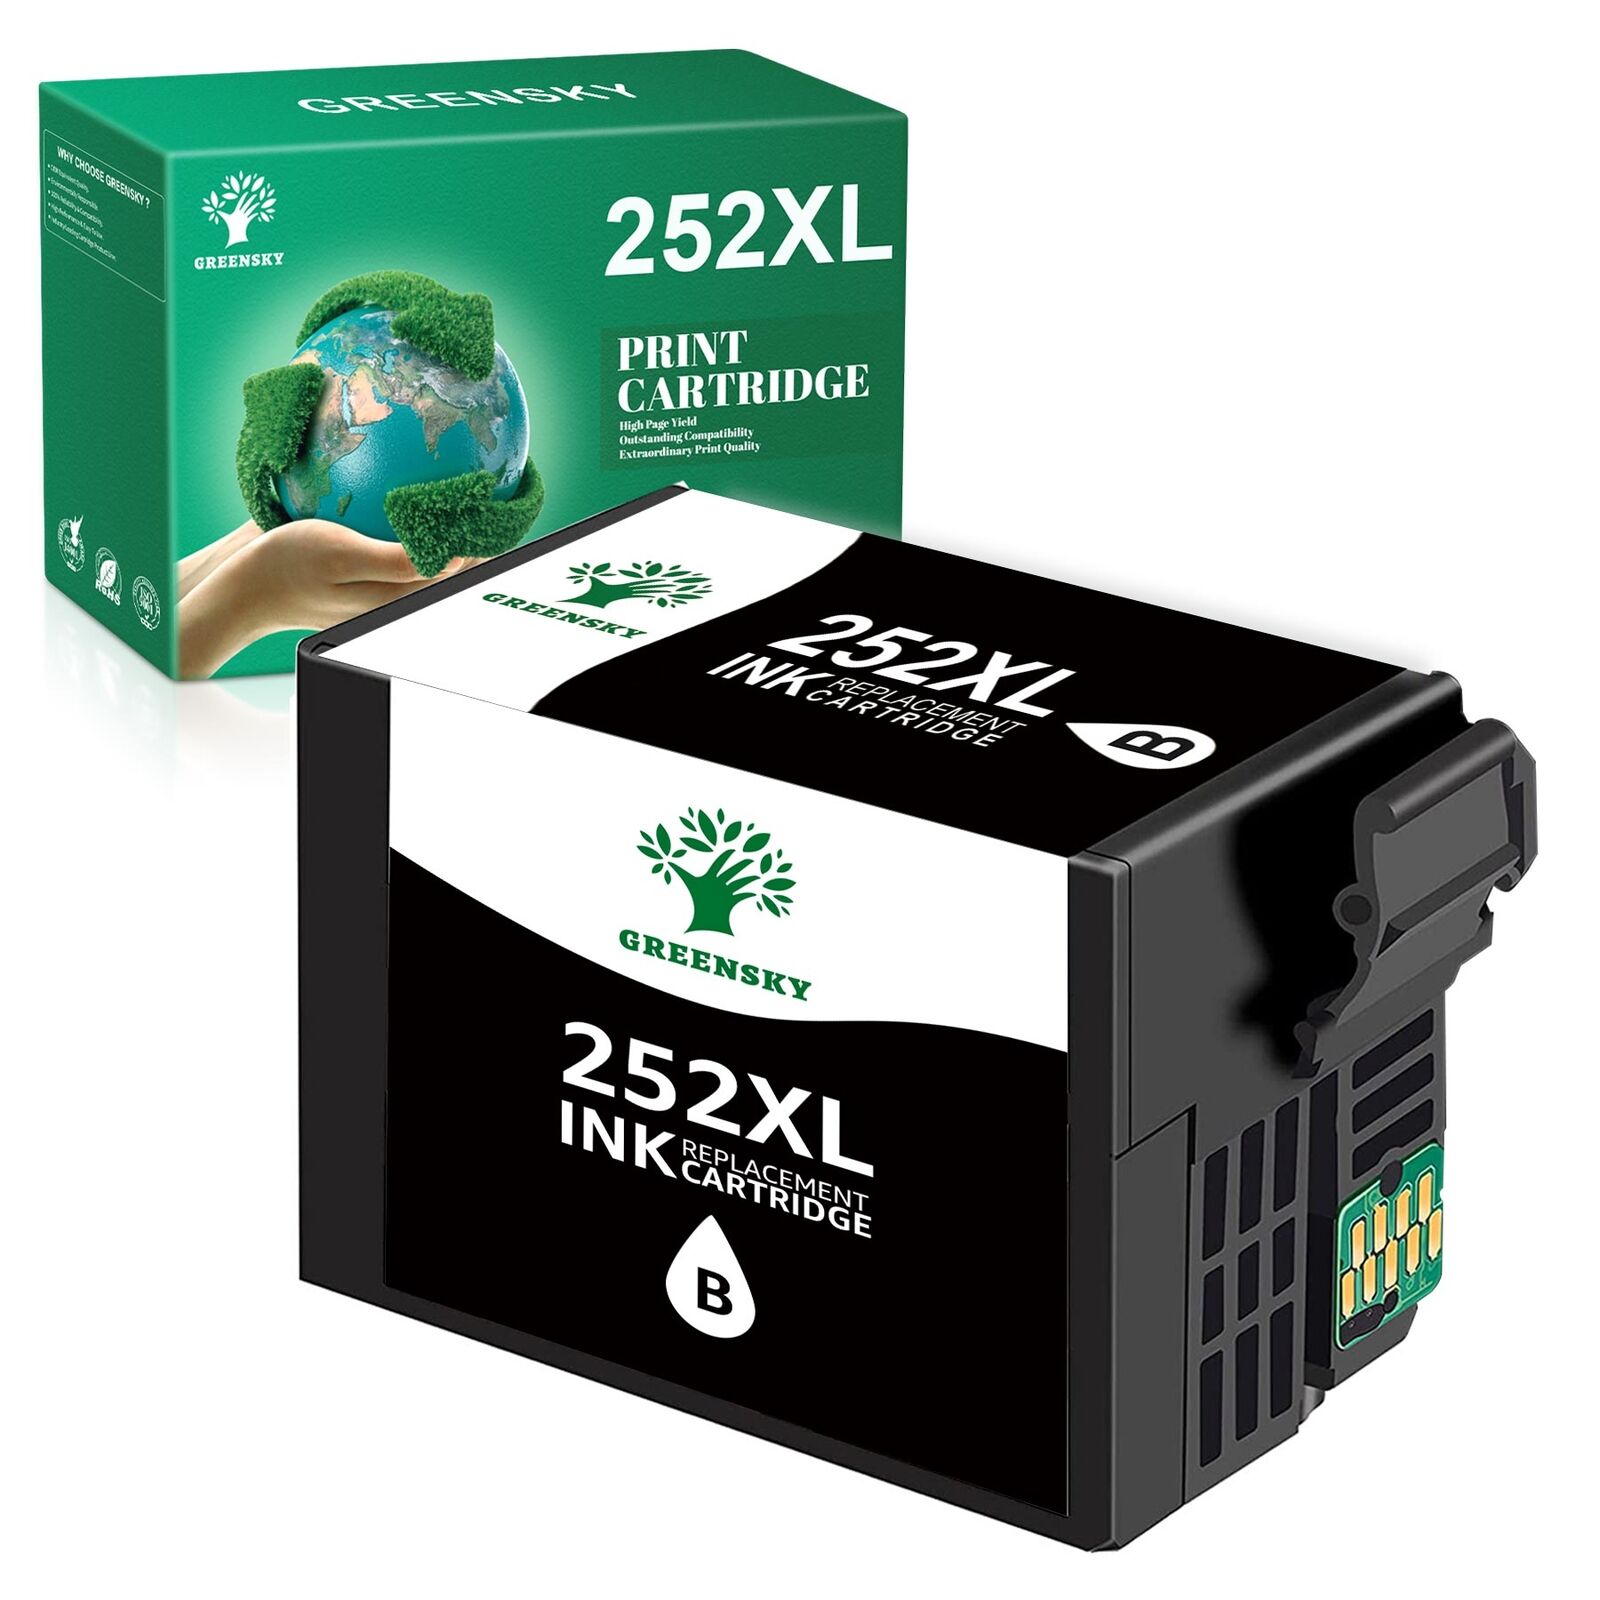 T252XL 252 XL Ink Cartridge Fit For Epson WorkForce WF-3620 WF-3640 WF-7610 lot